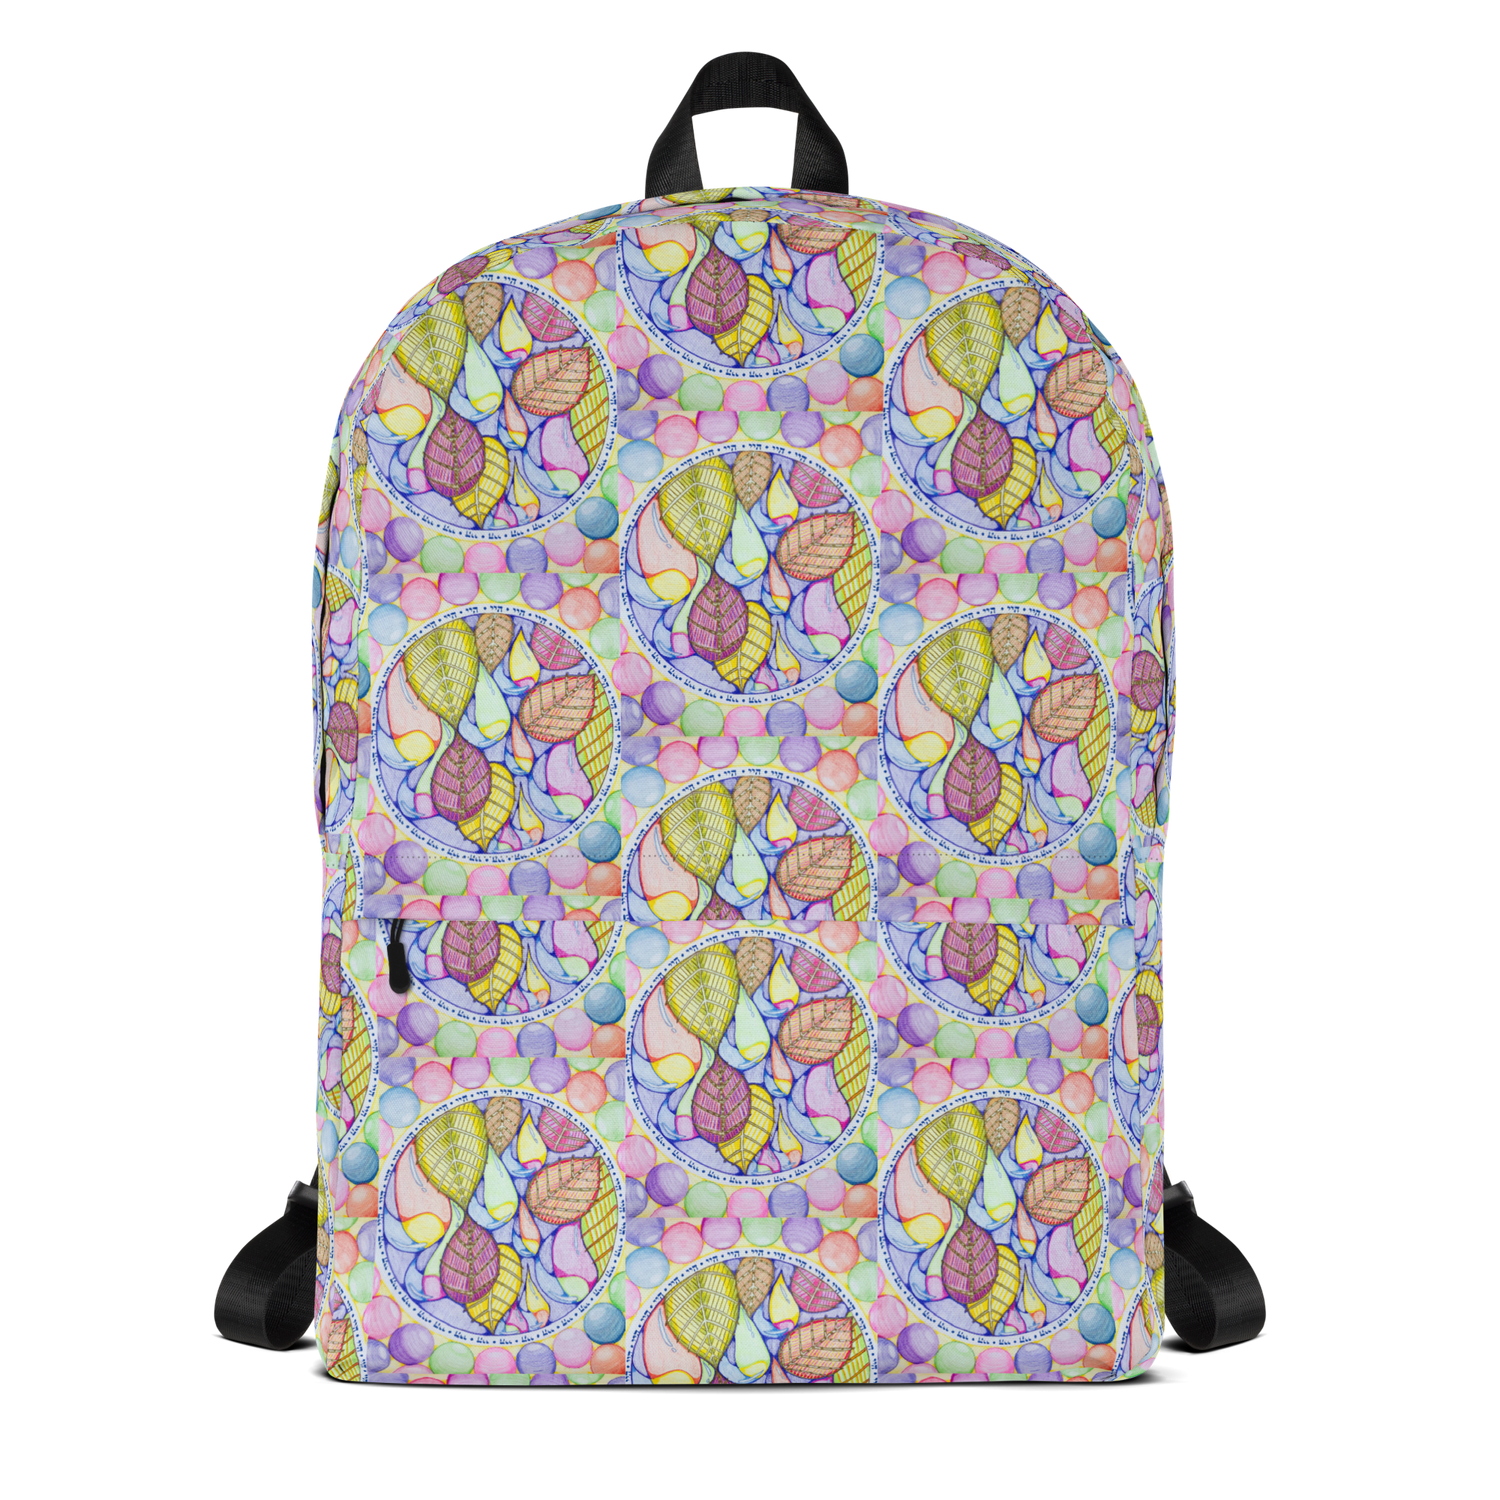 Backpack - Medium Size